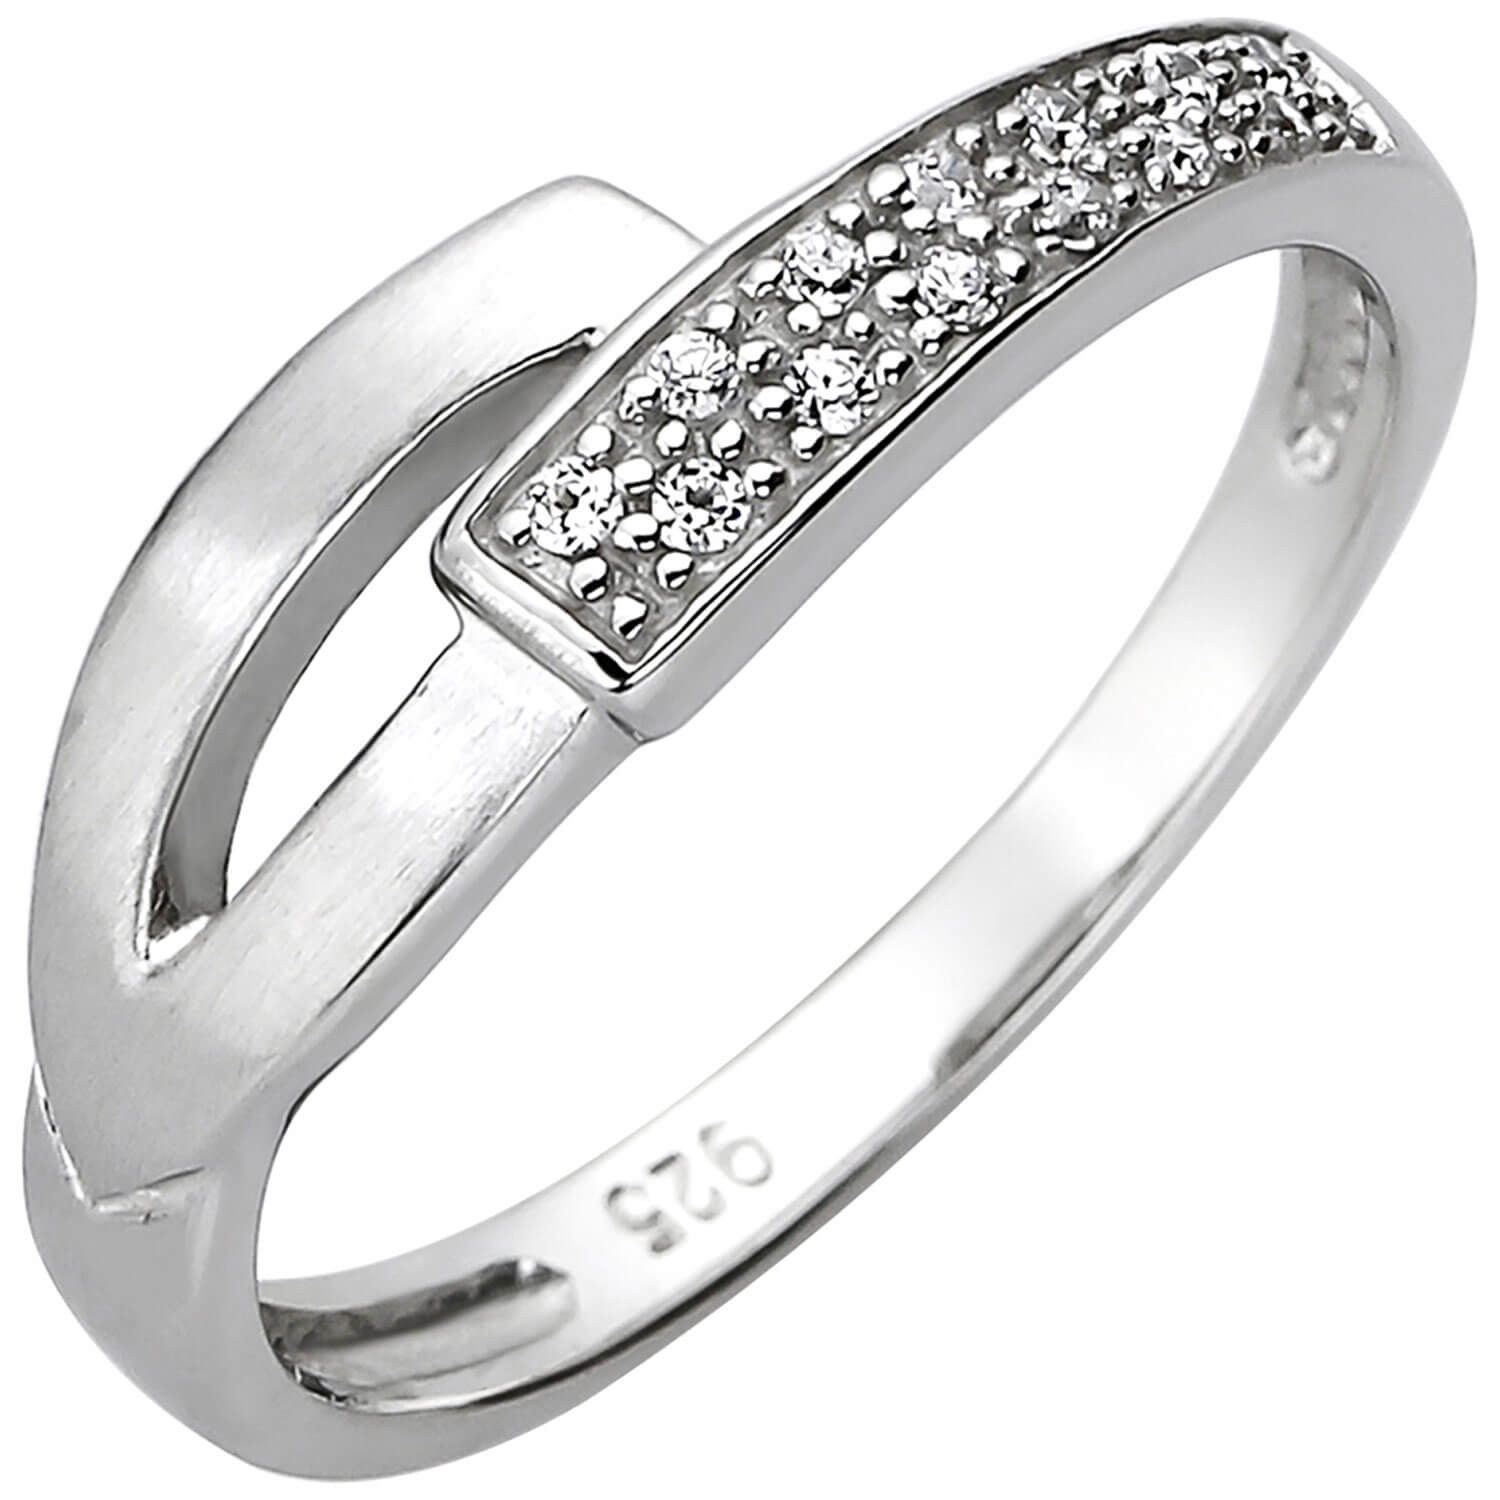 Schmuck Krone Silberring Ring aus 925 Silber mit 13 Zirkonia weiß, Silber 925